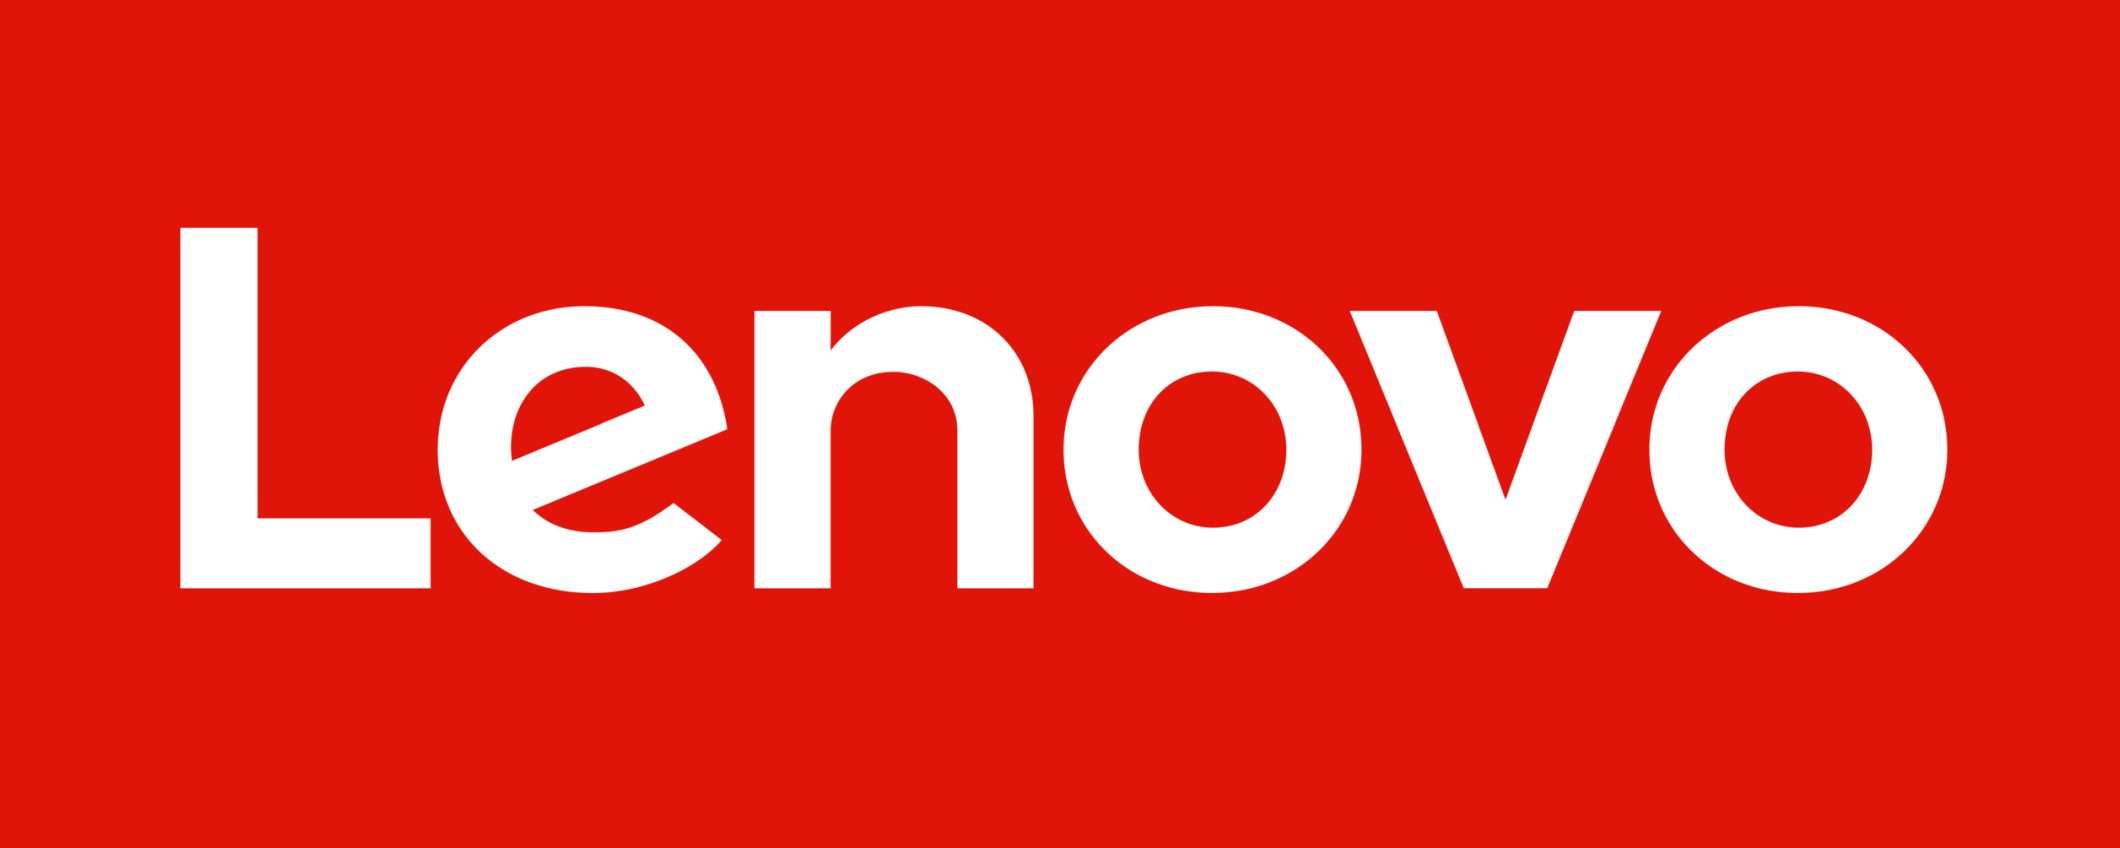 Guerra di brevetti tra Lenovo, ASUS e Ericsson